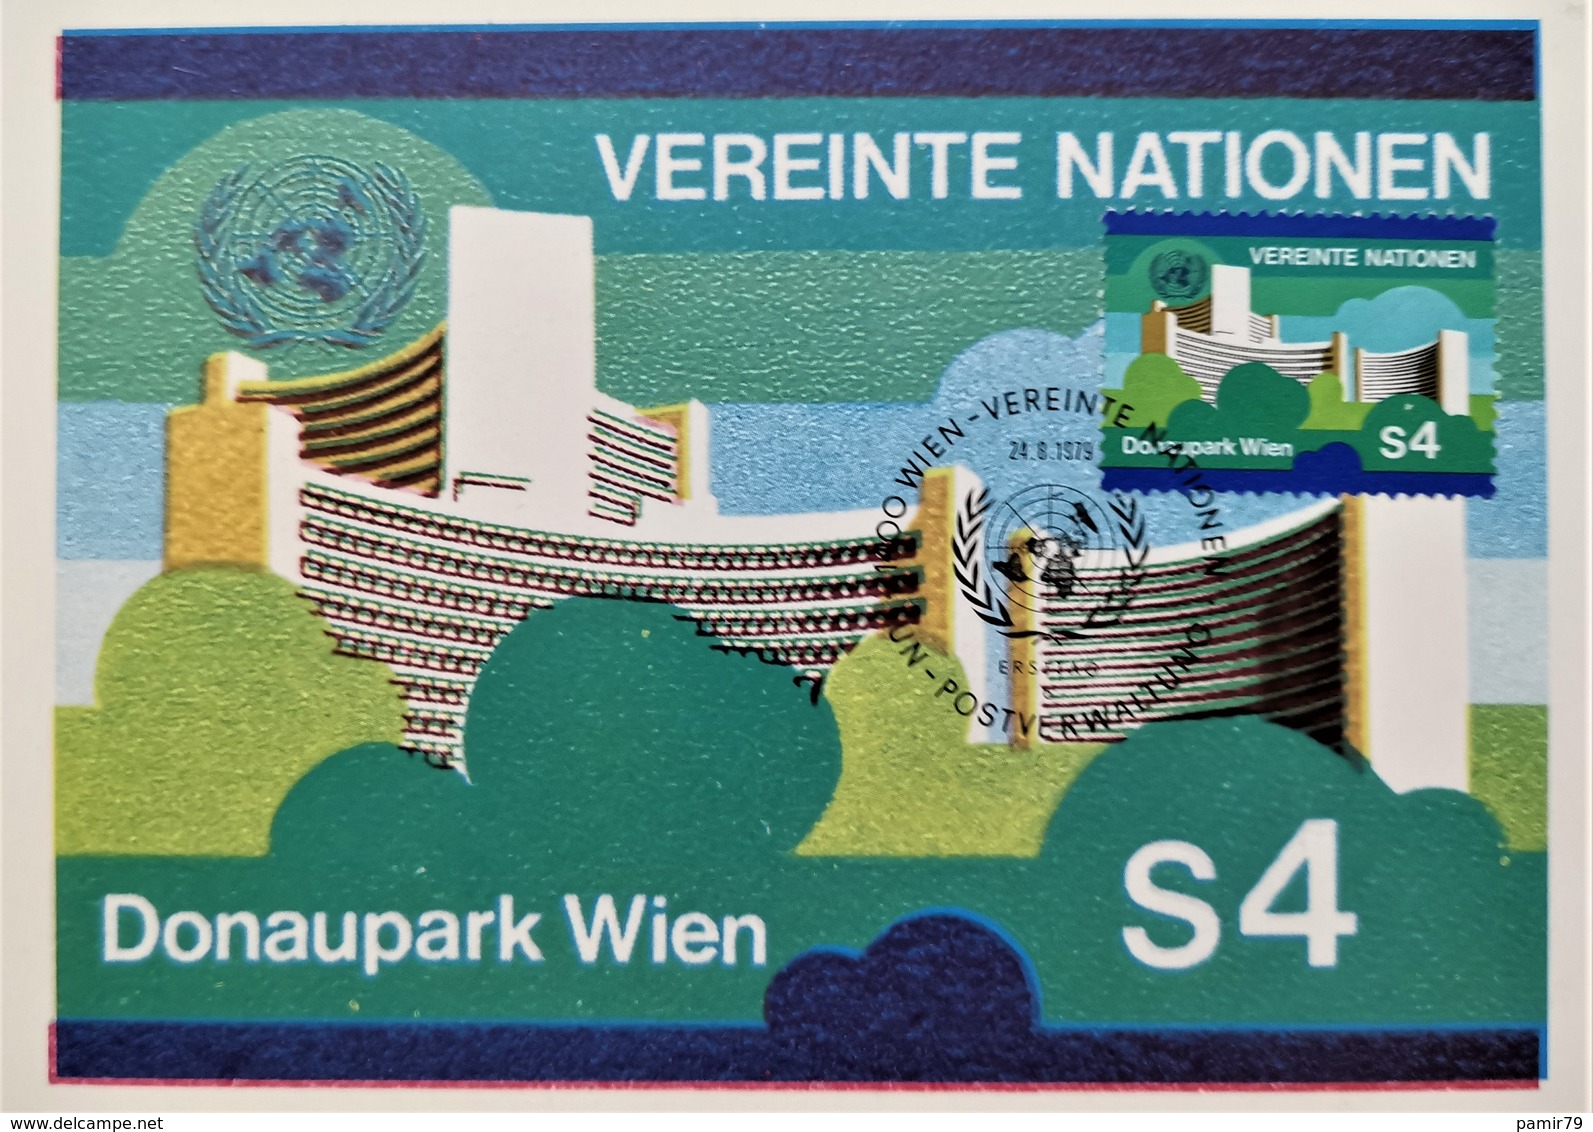 1979 UNO Vereinte Nationen Maximumkarte - Cartes-maximum